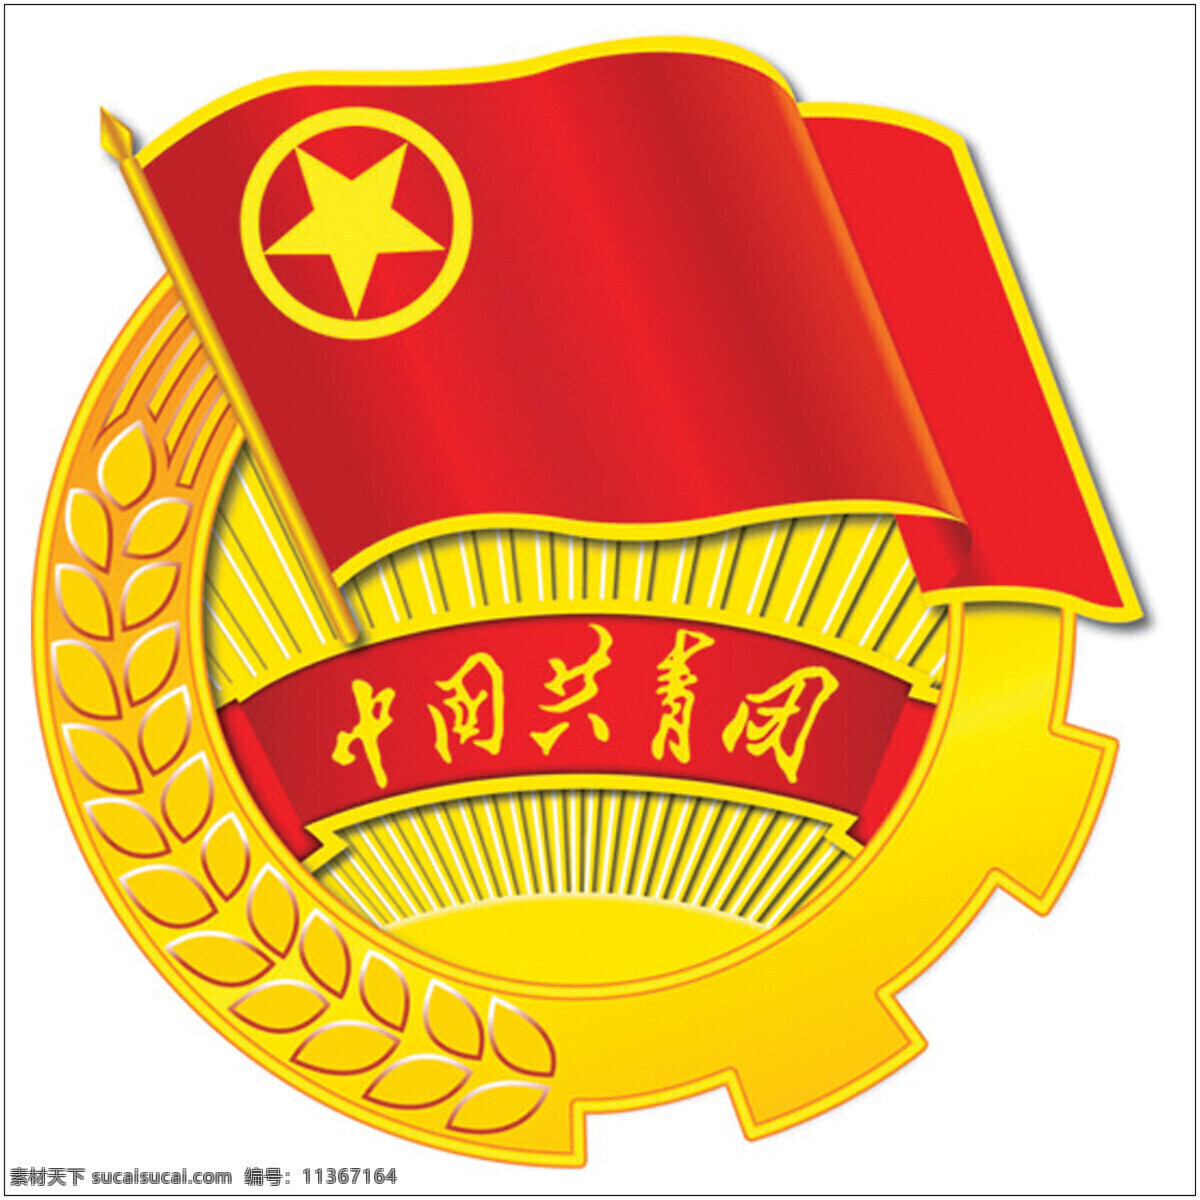 团徽 平面设计 其他设计 党旗飘飘 设计作品 282